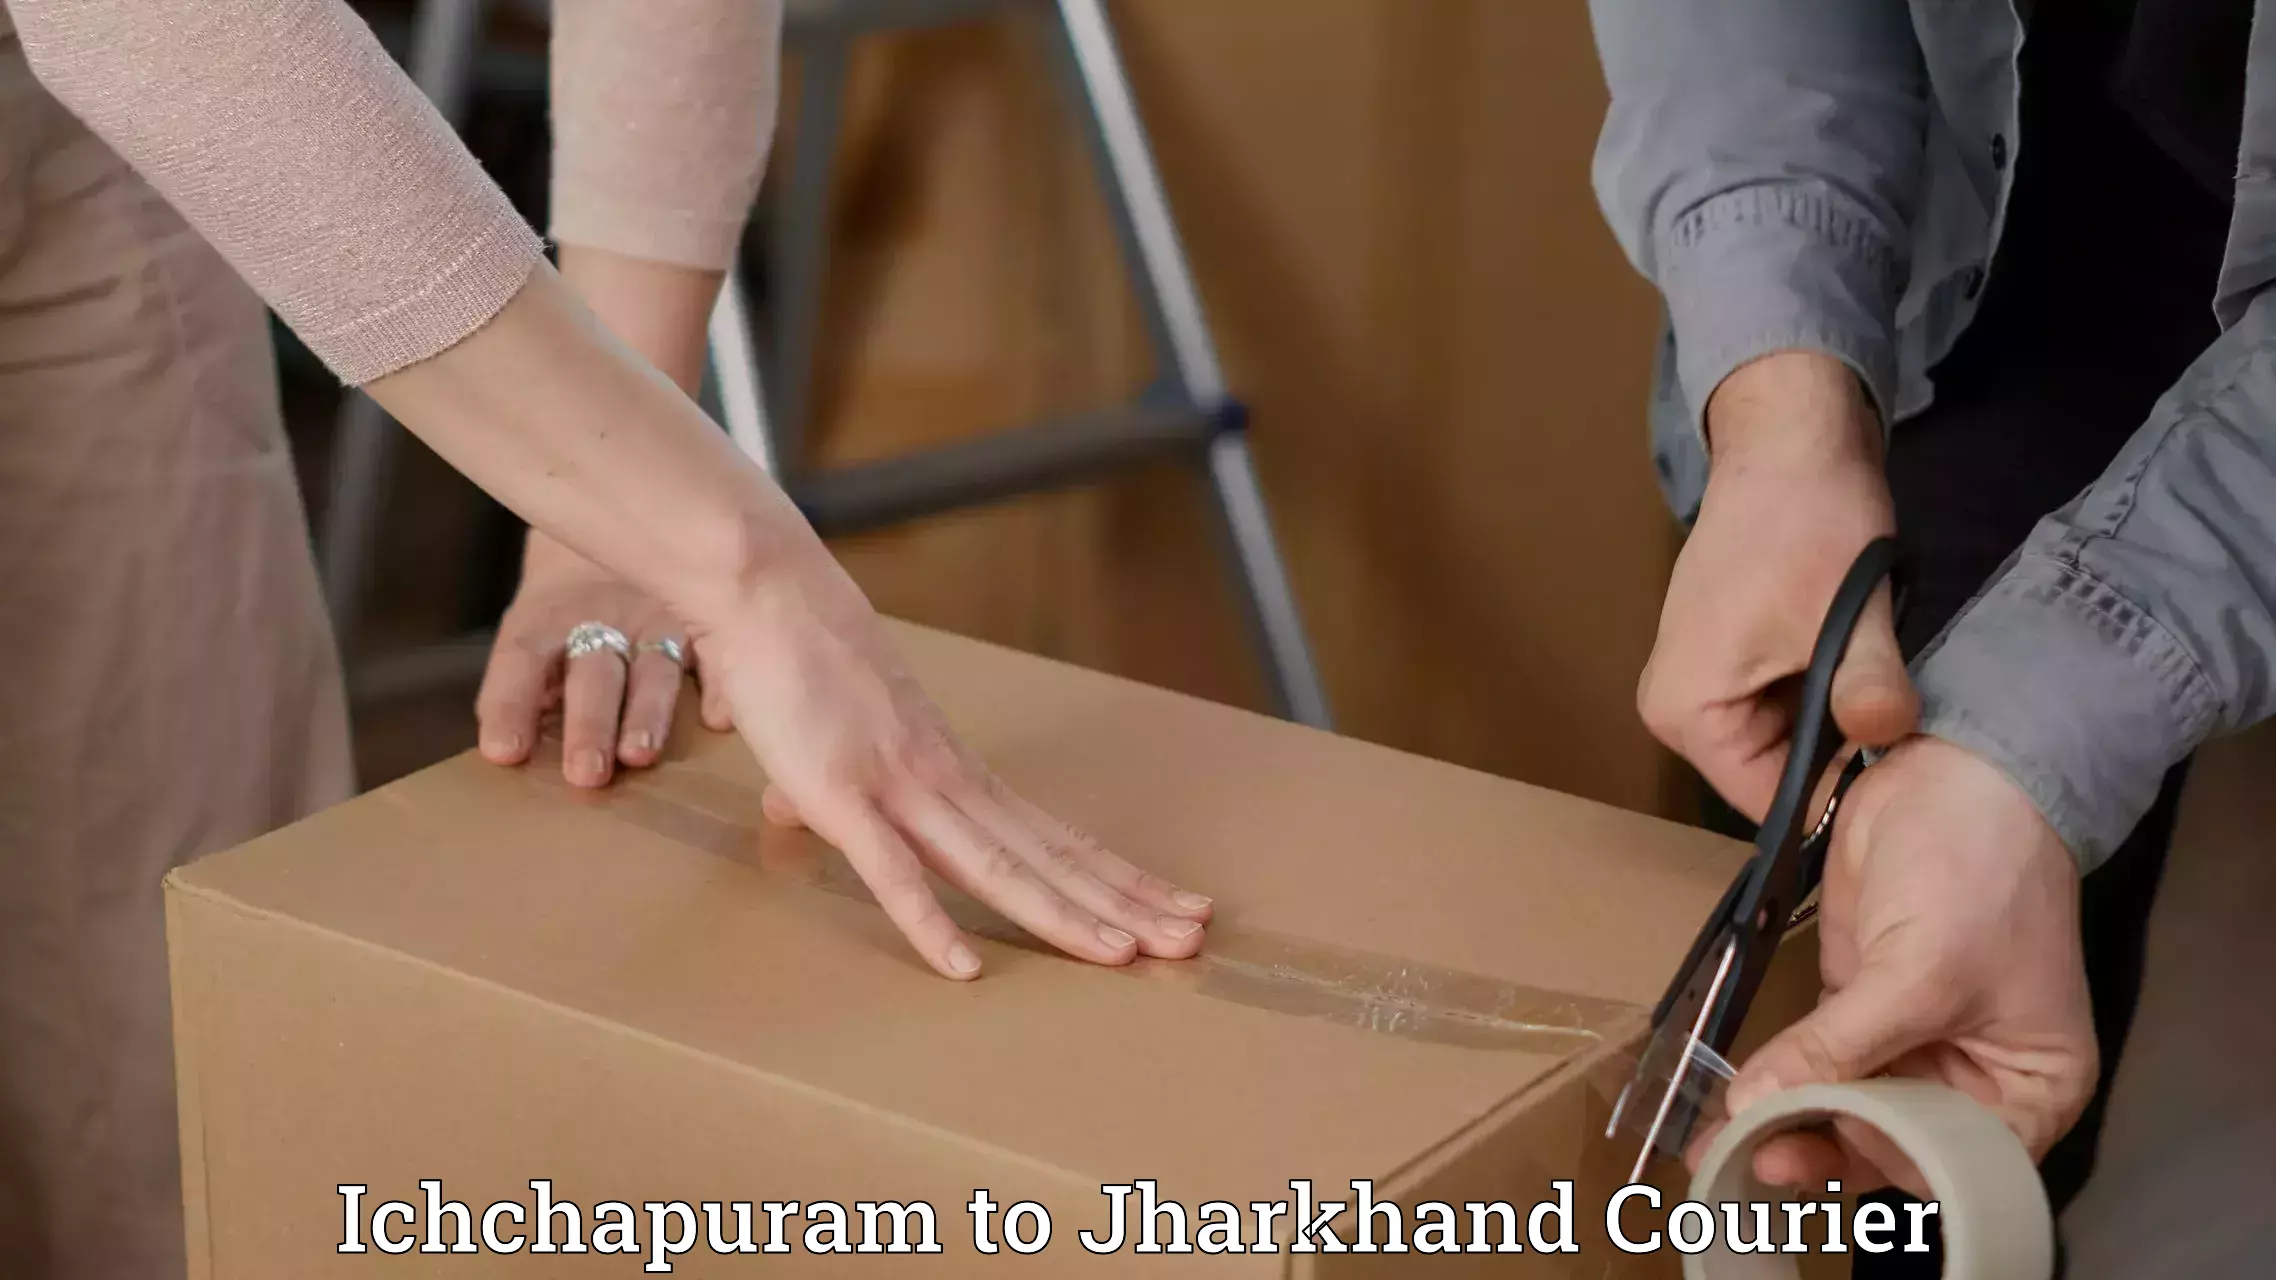 Courier service partnerships in Ichchapuram to Hariharganj